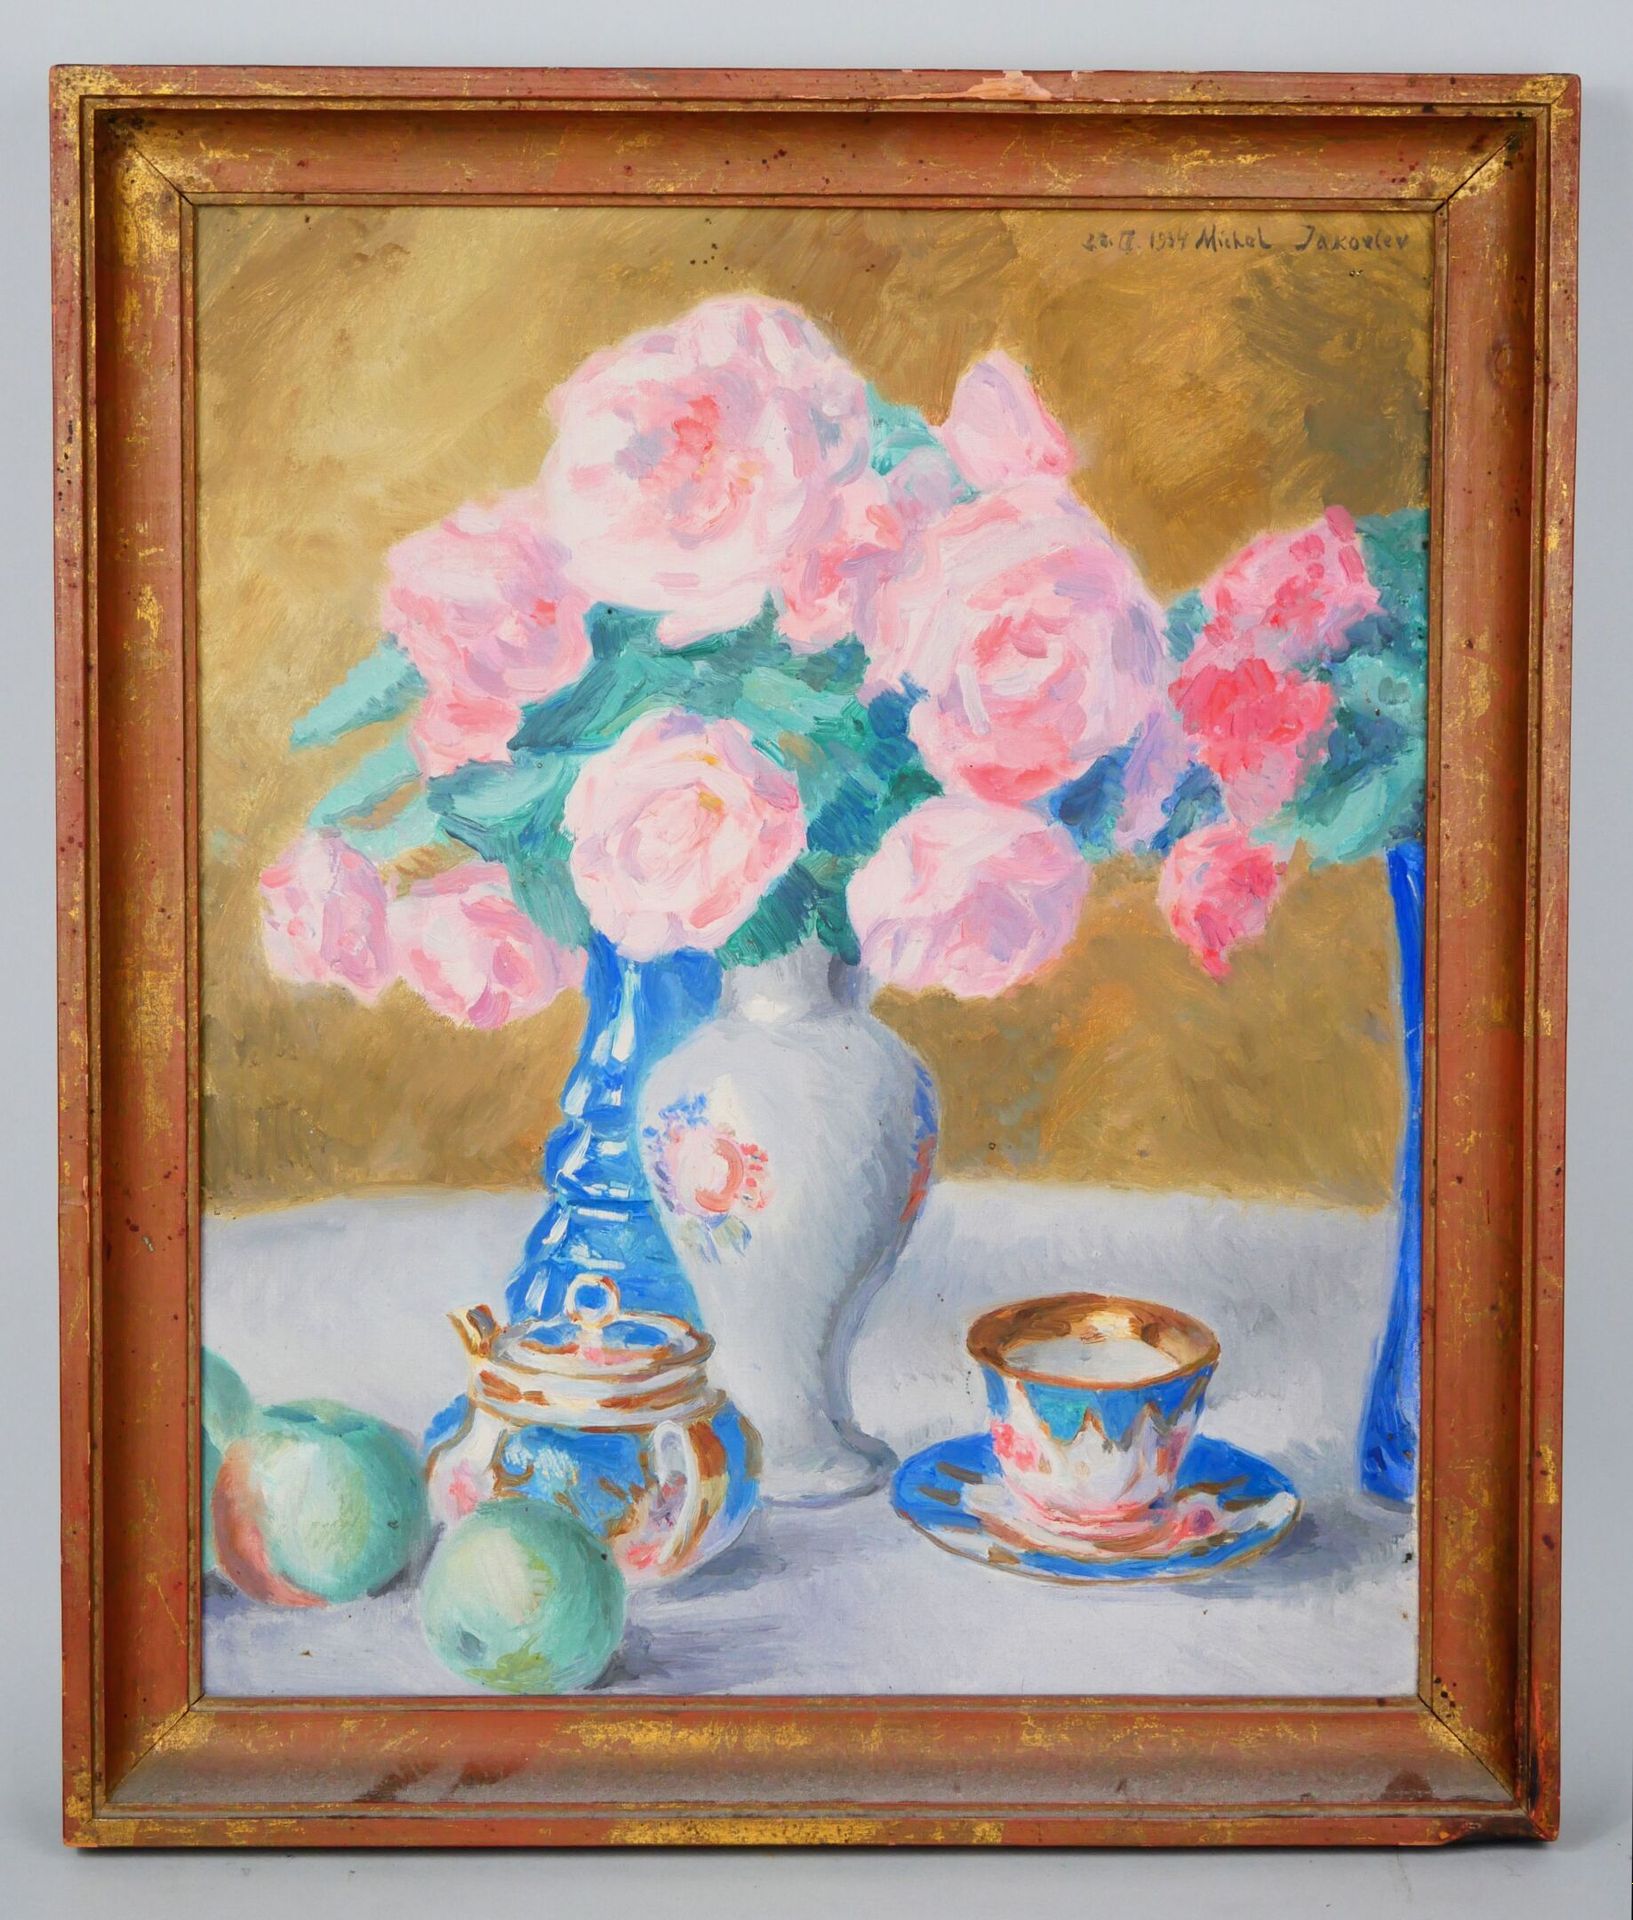 Null 米哈伊尔-尼古拉耶维奇-亚科夫列夫 (1880-1942)
静物与一束玫瑰花
布面油画，日期为 "22.III.1934"，右上方有签名。背面有副署，&hellip;